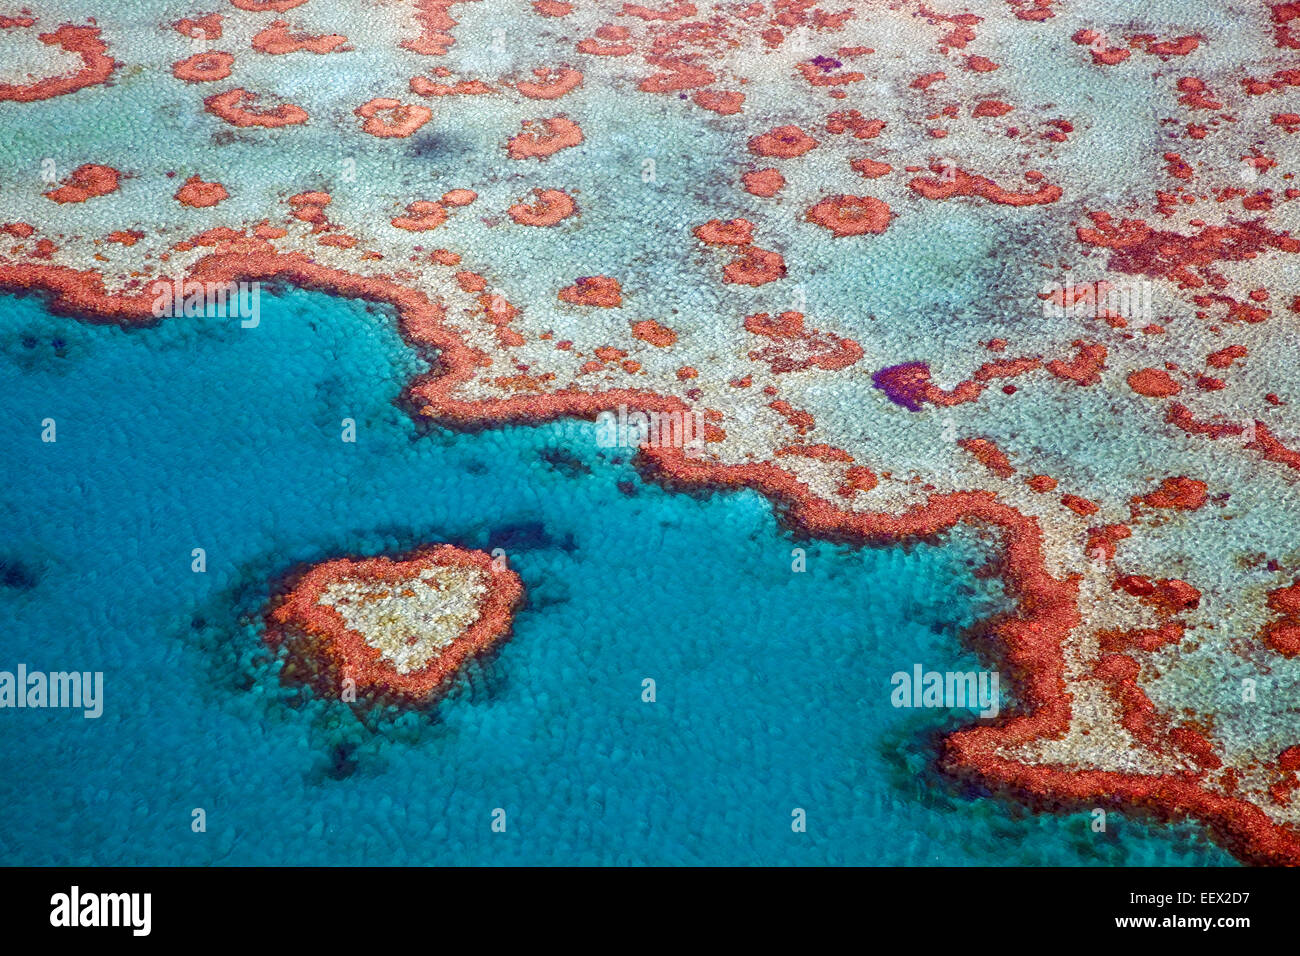 Vista aérea del corazón en forma de corazón, que forma parte del arrecife de la Gran Barrera de Coral de Whitsundays en el Mar de Coral, Queensland, Australia Foto de stock